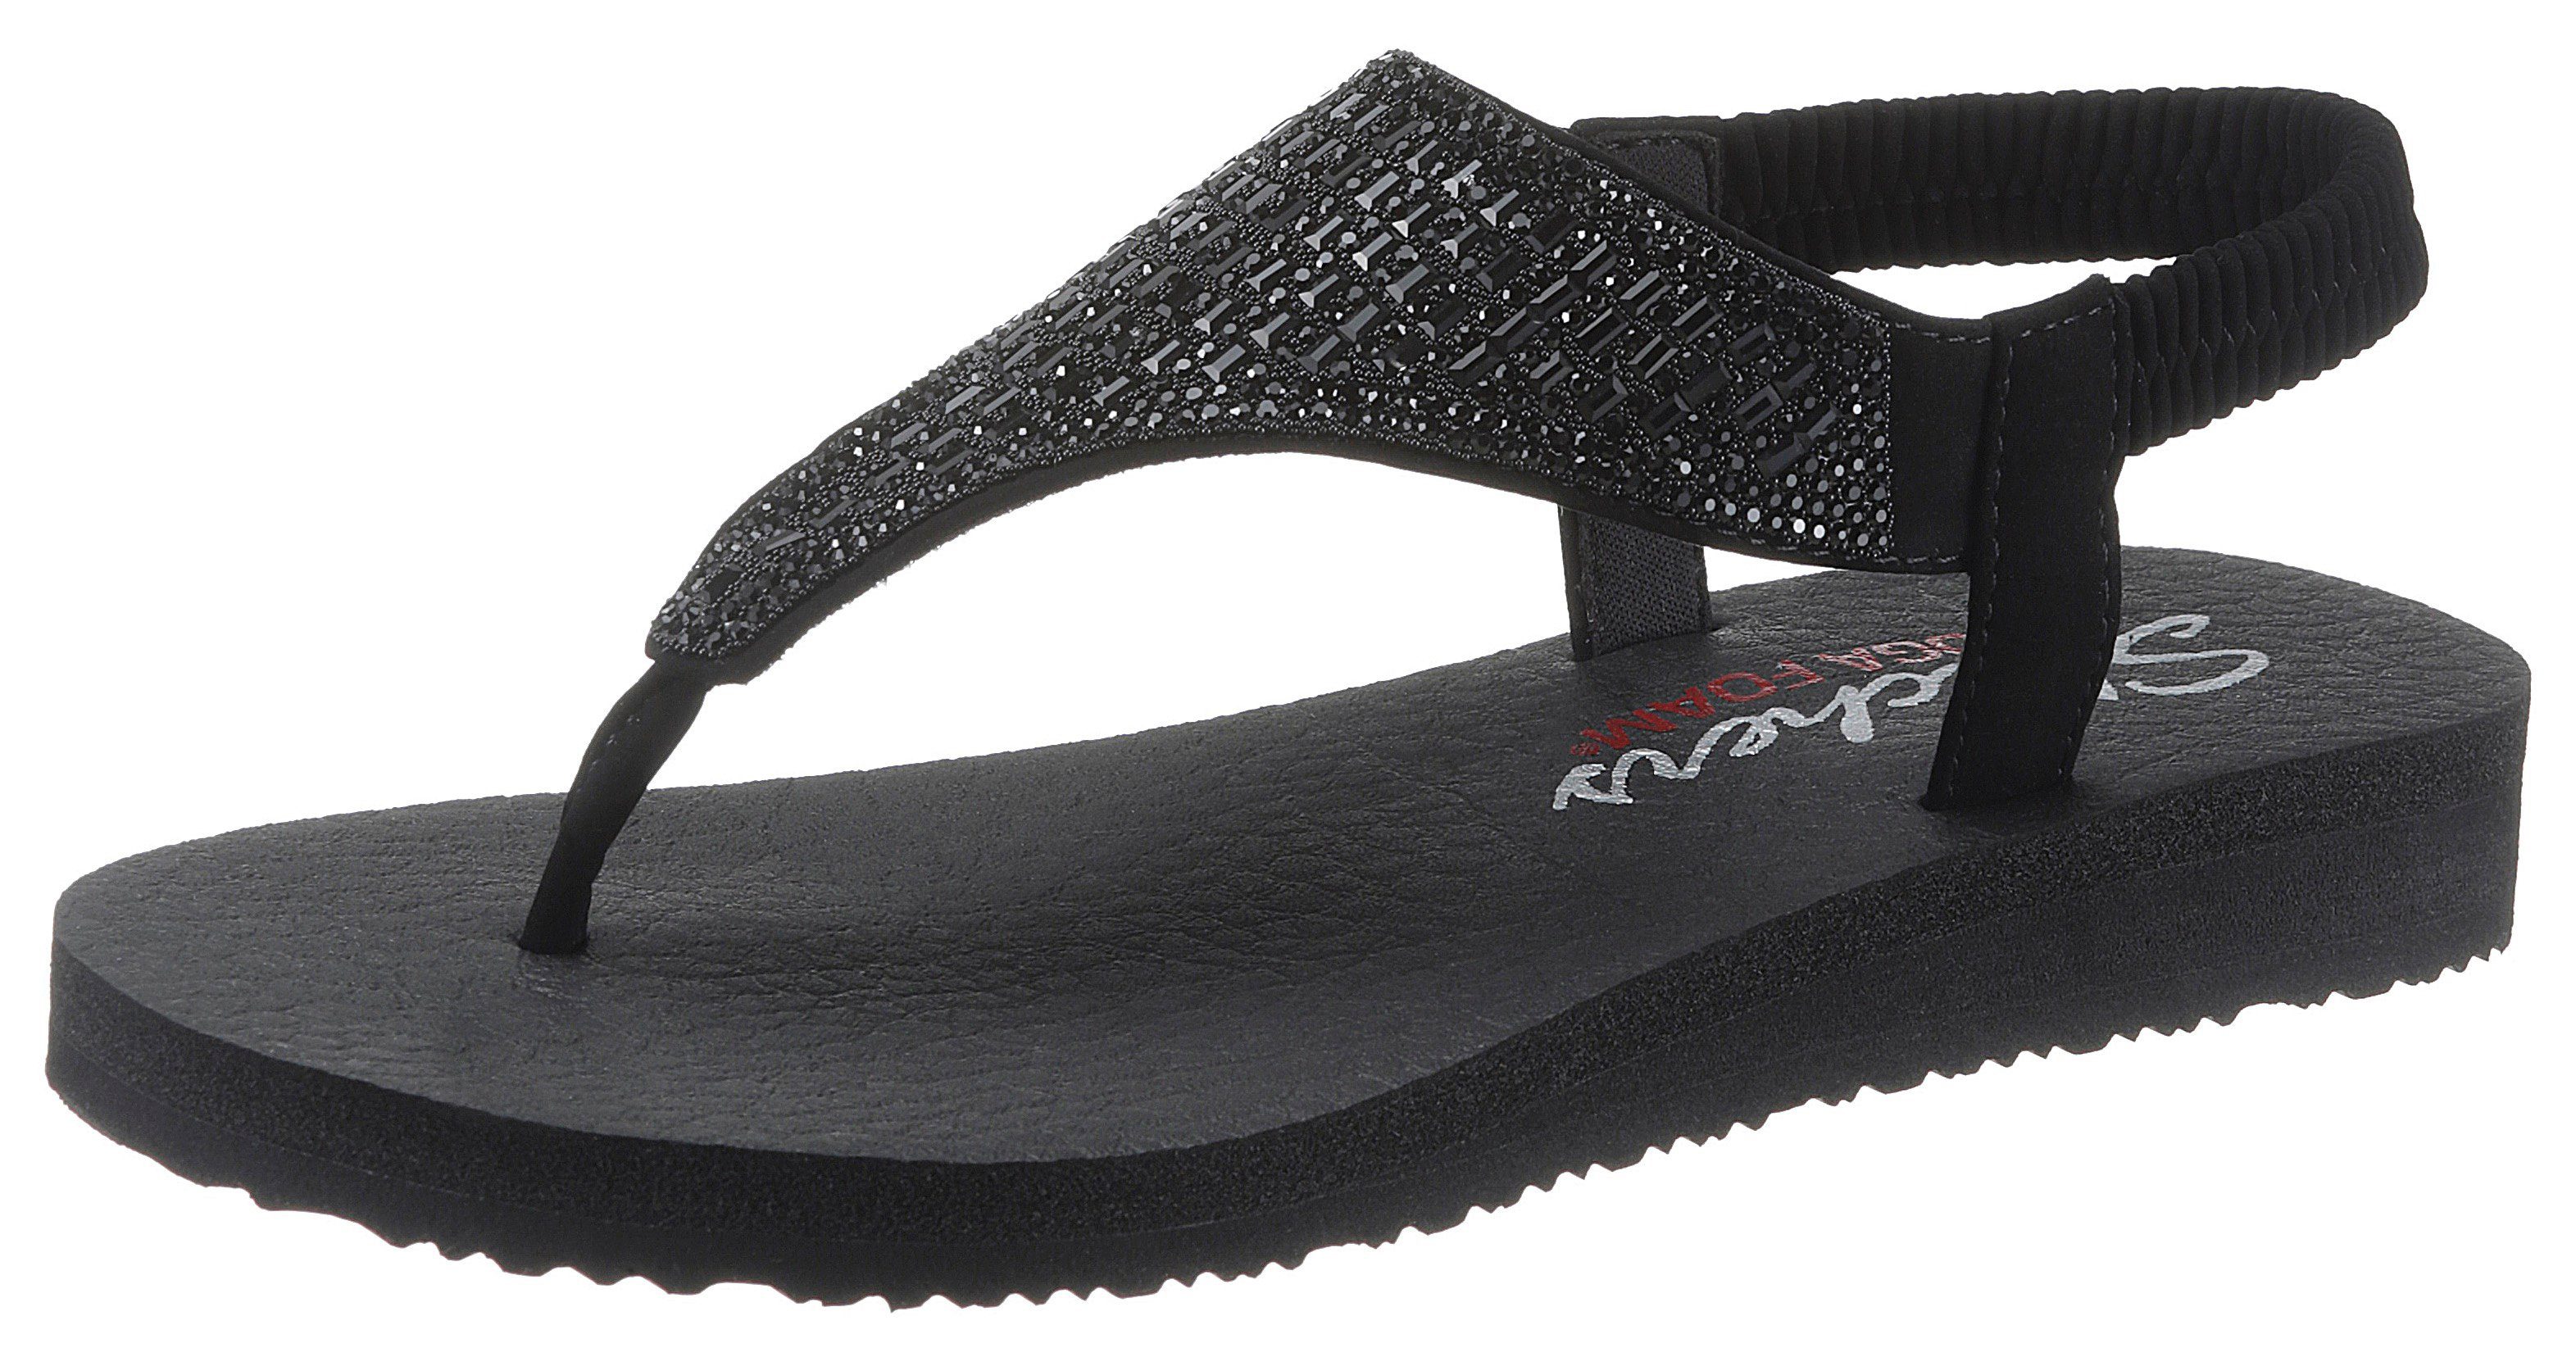 Skechers »Meditation - Rock Crown« Sandale mit Gummiband an der Ferse  online kaufen | OTTO